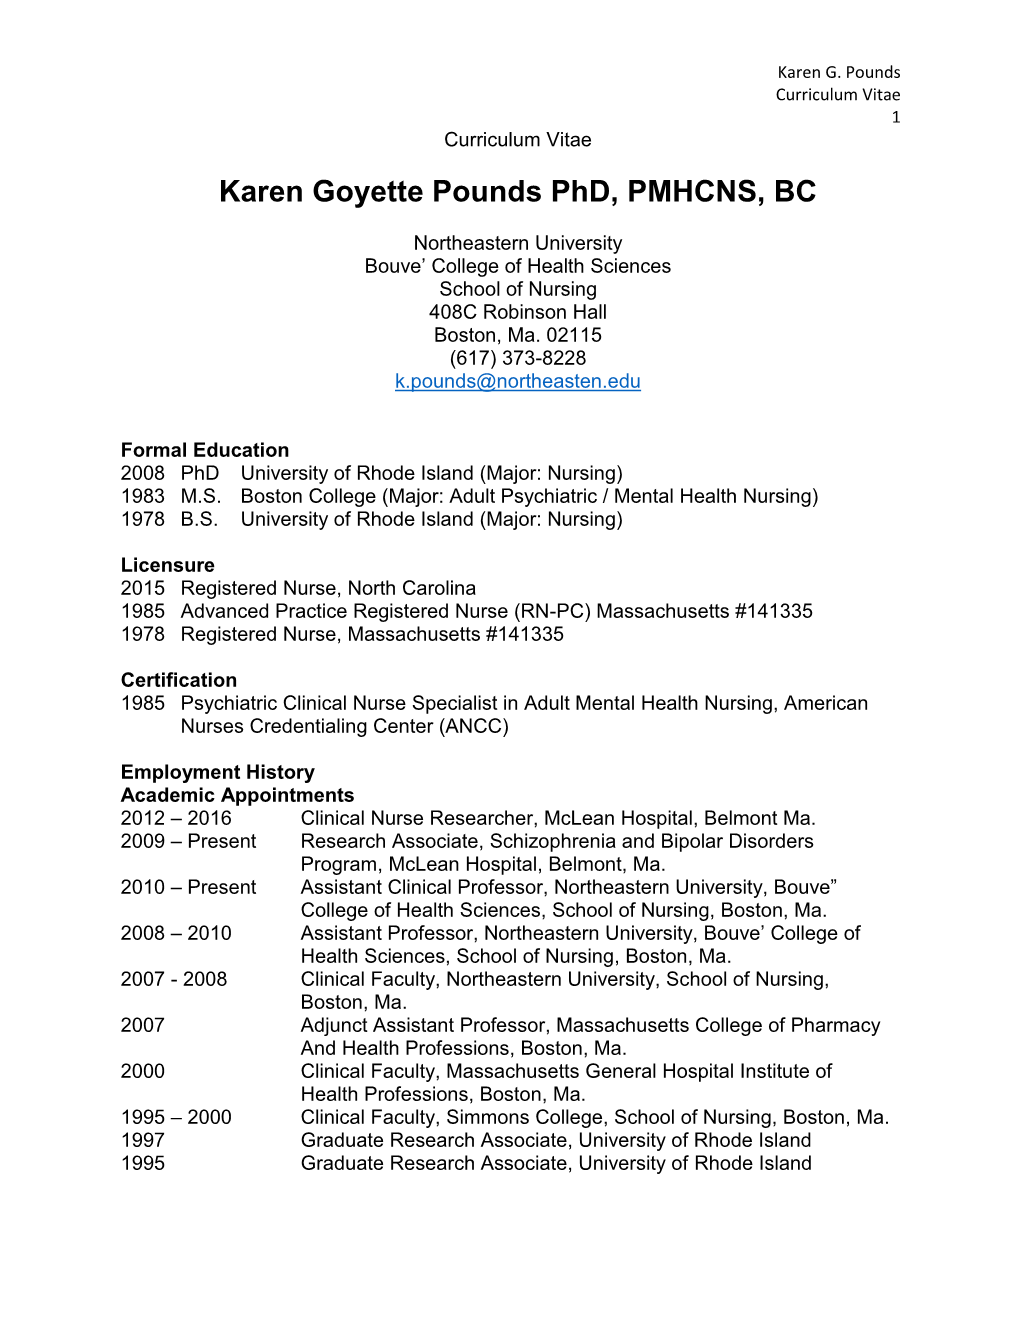 Karen Goyette Pounds Phd, PMHCNS, BC